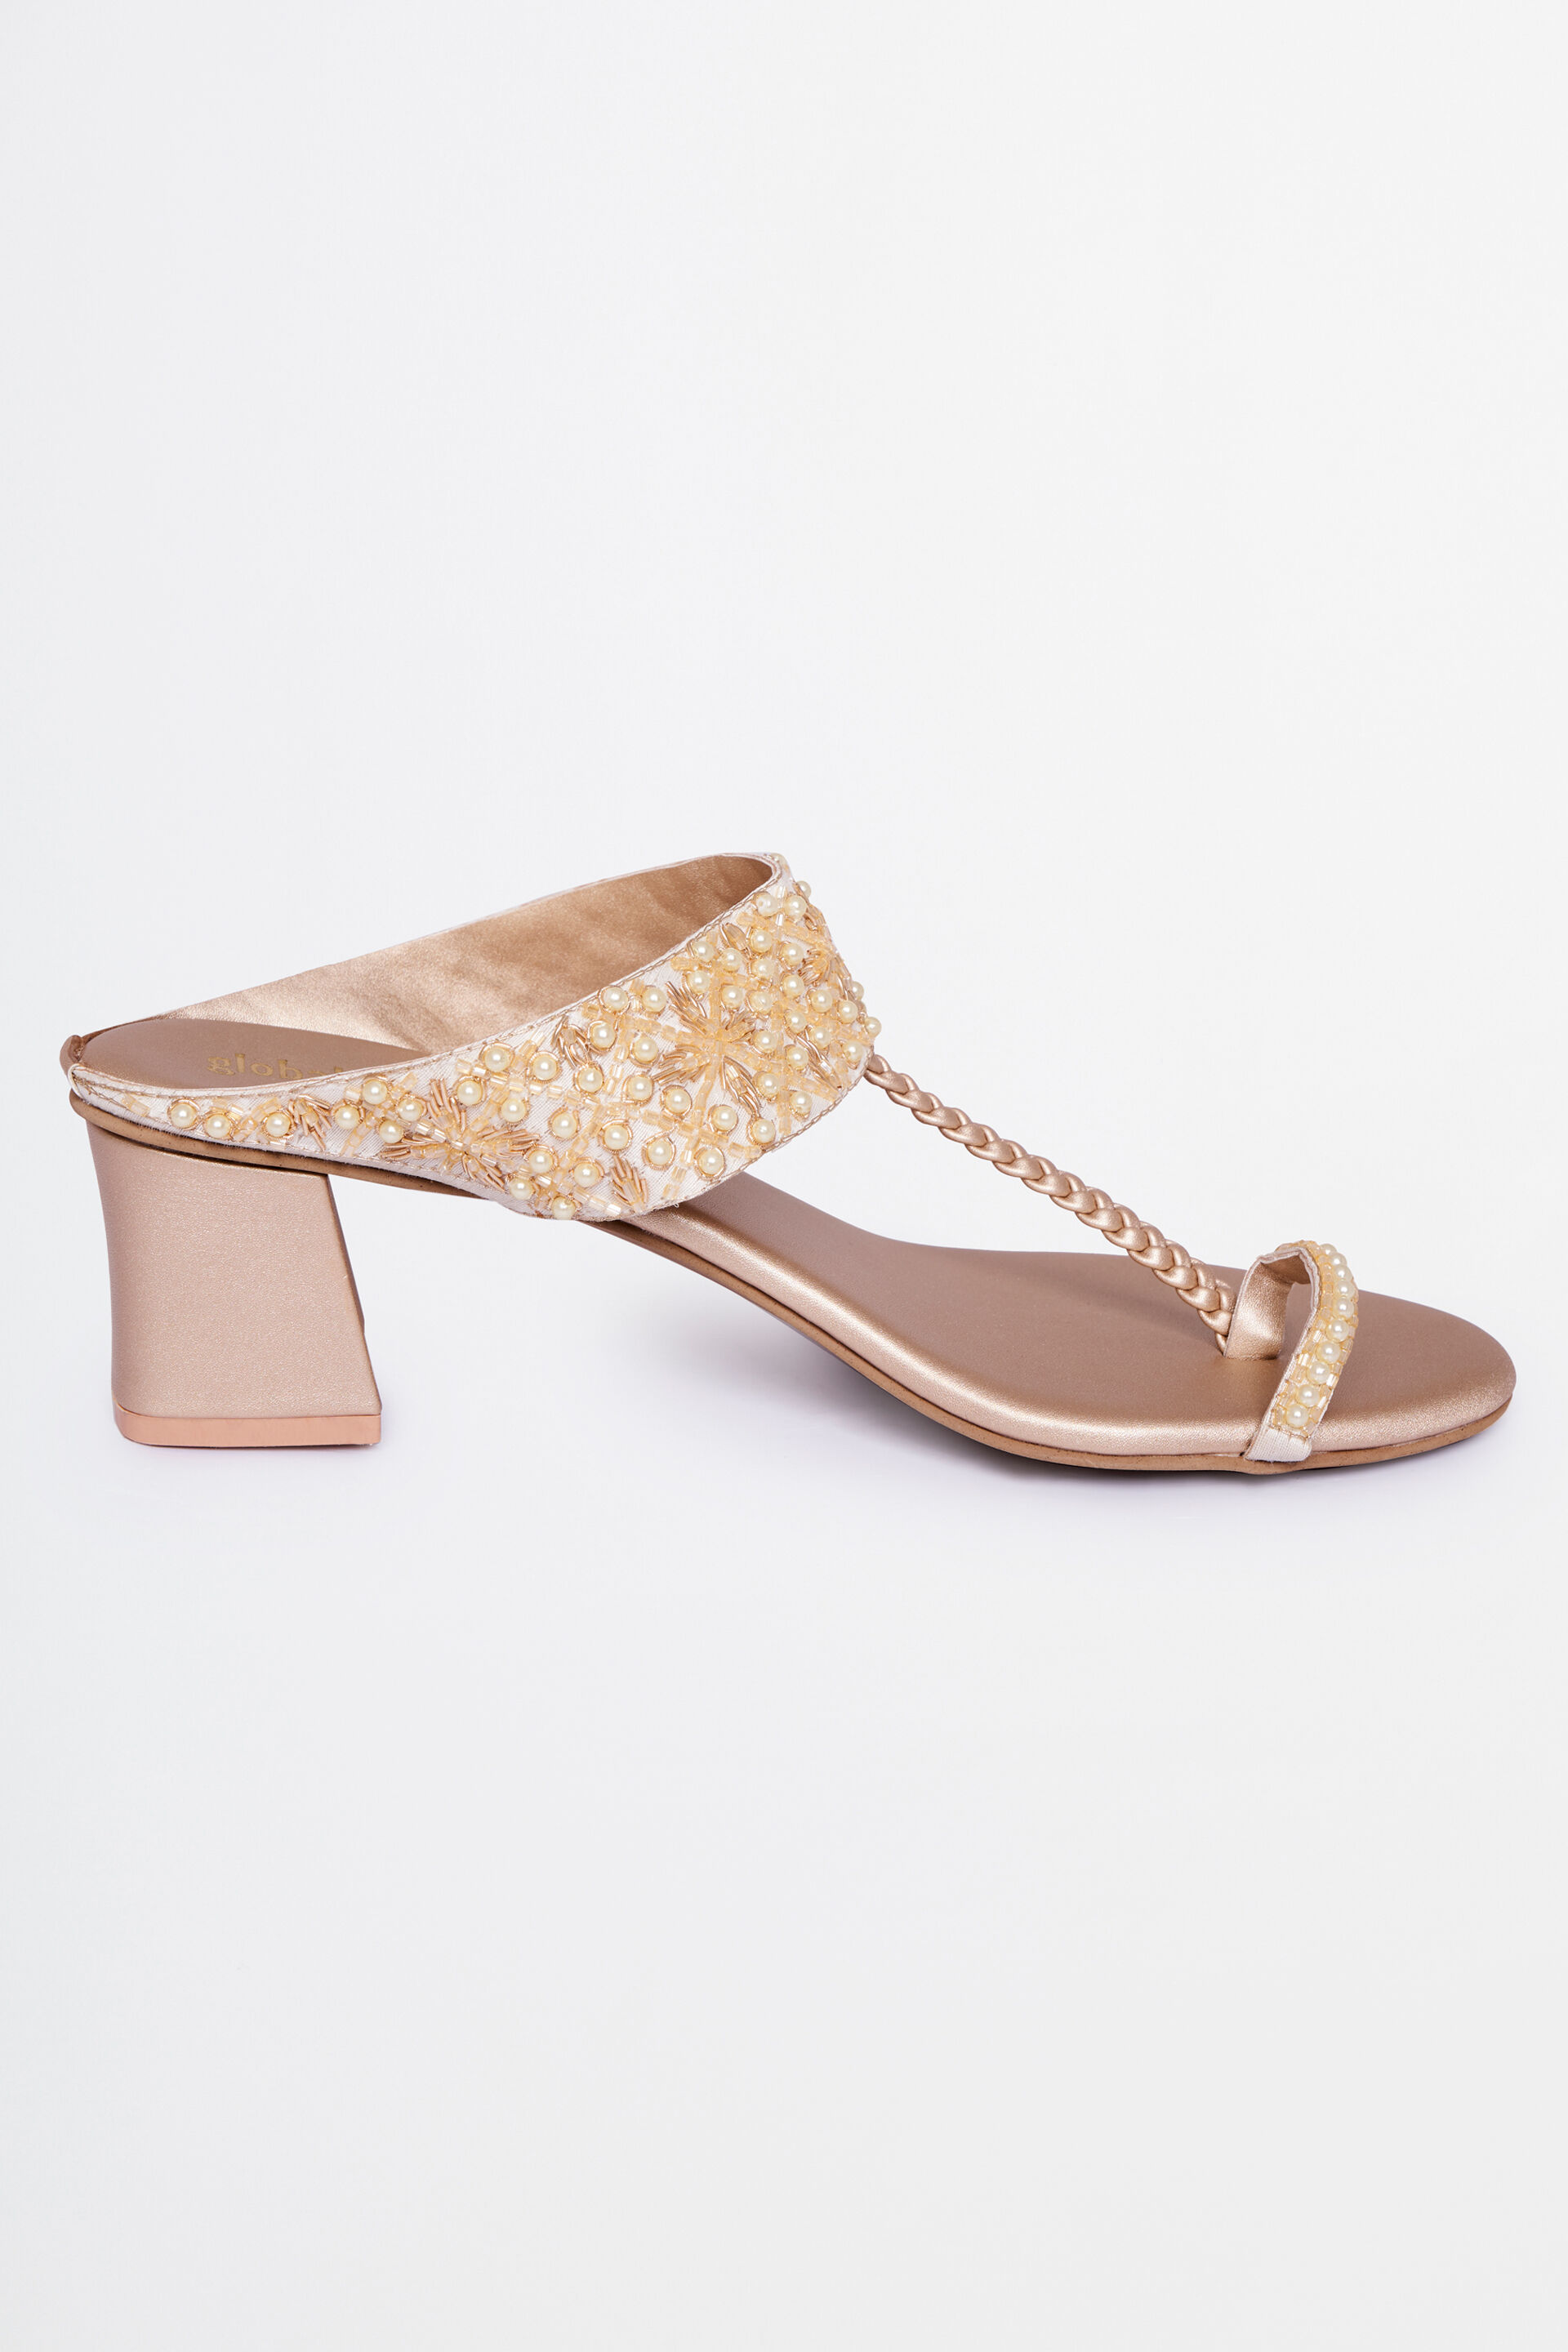 Shop Online Women Gold Diamond Studded Block Heel Sandals at ₹476